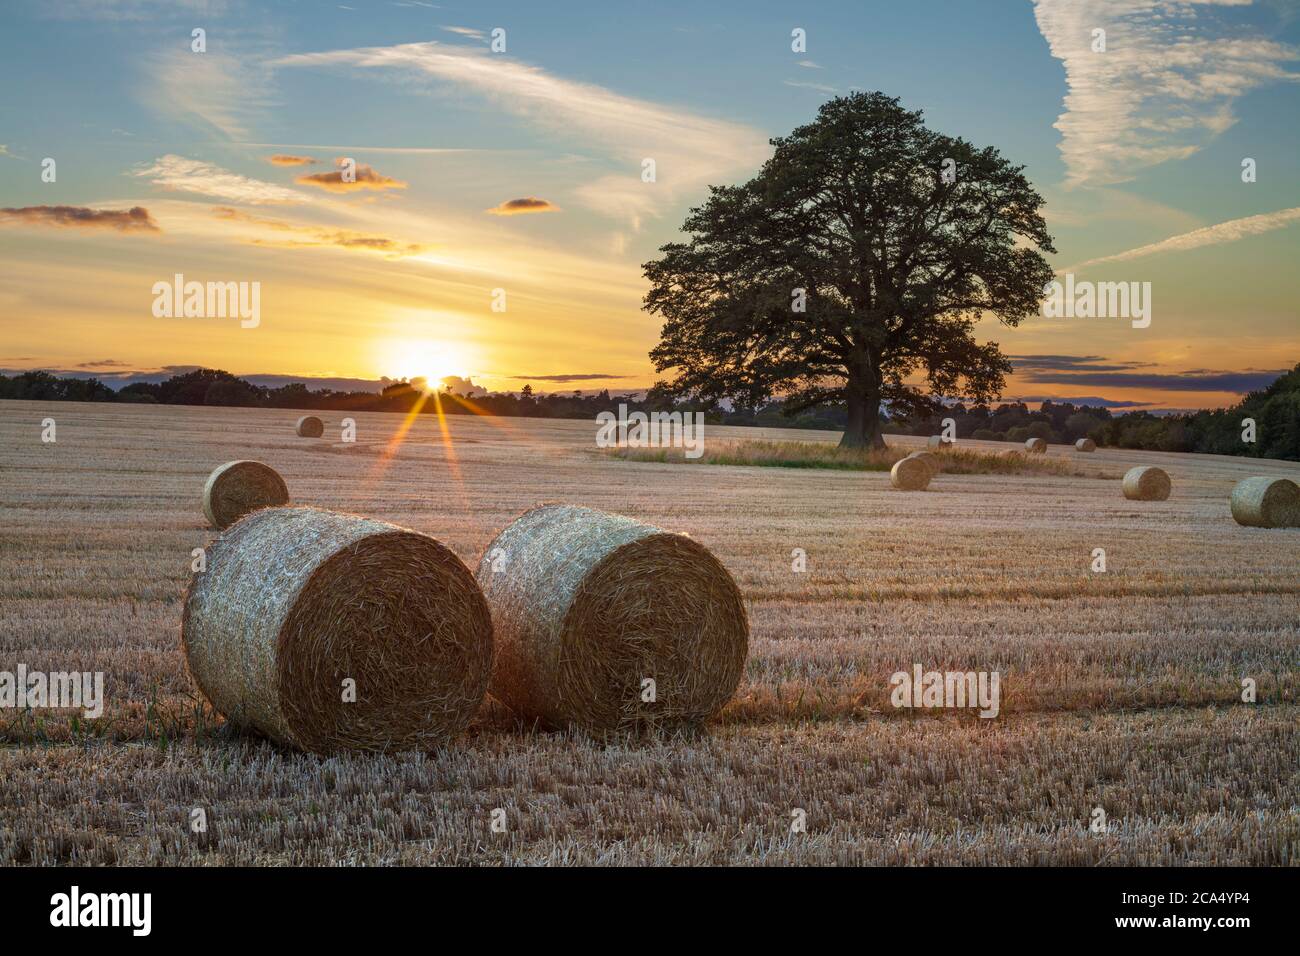 Balles rondes de foin et chêne dans le champ au coucher du soleil, près de Newbury, Berkshire, Angleterre, Royaume-Uni, Europe Banque D'Images